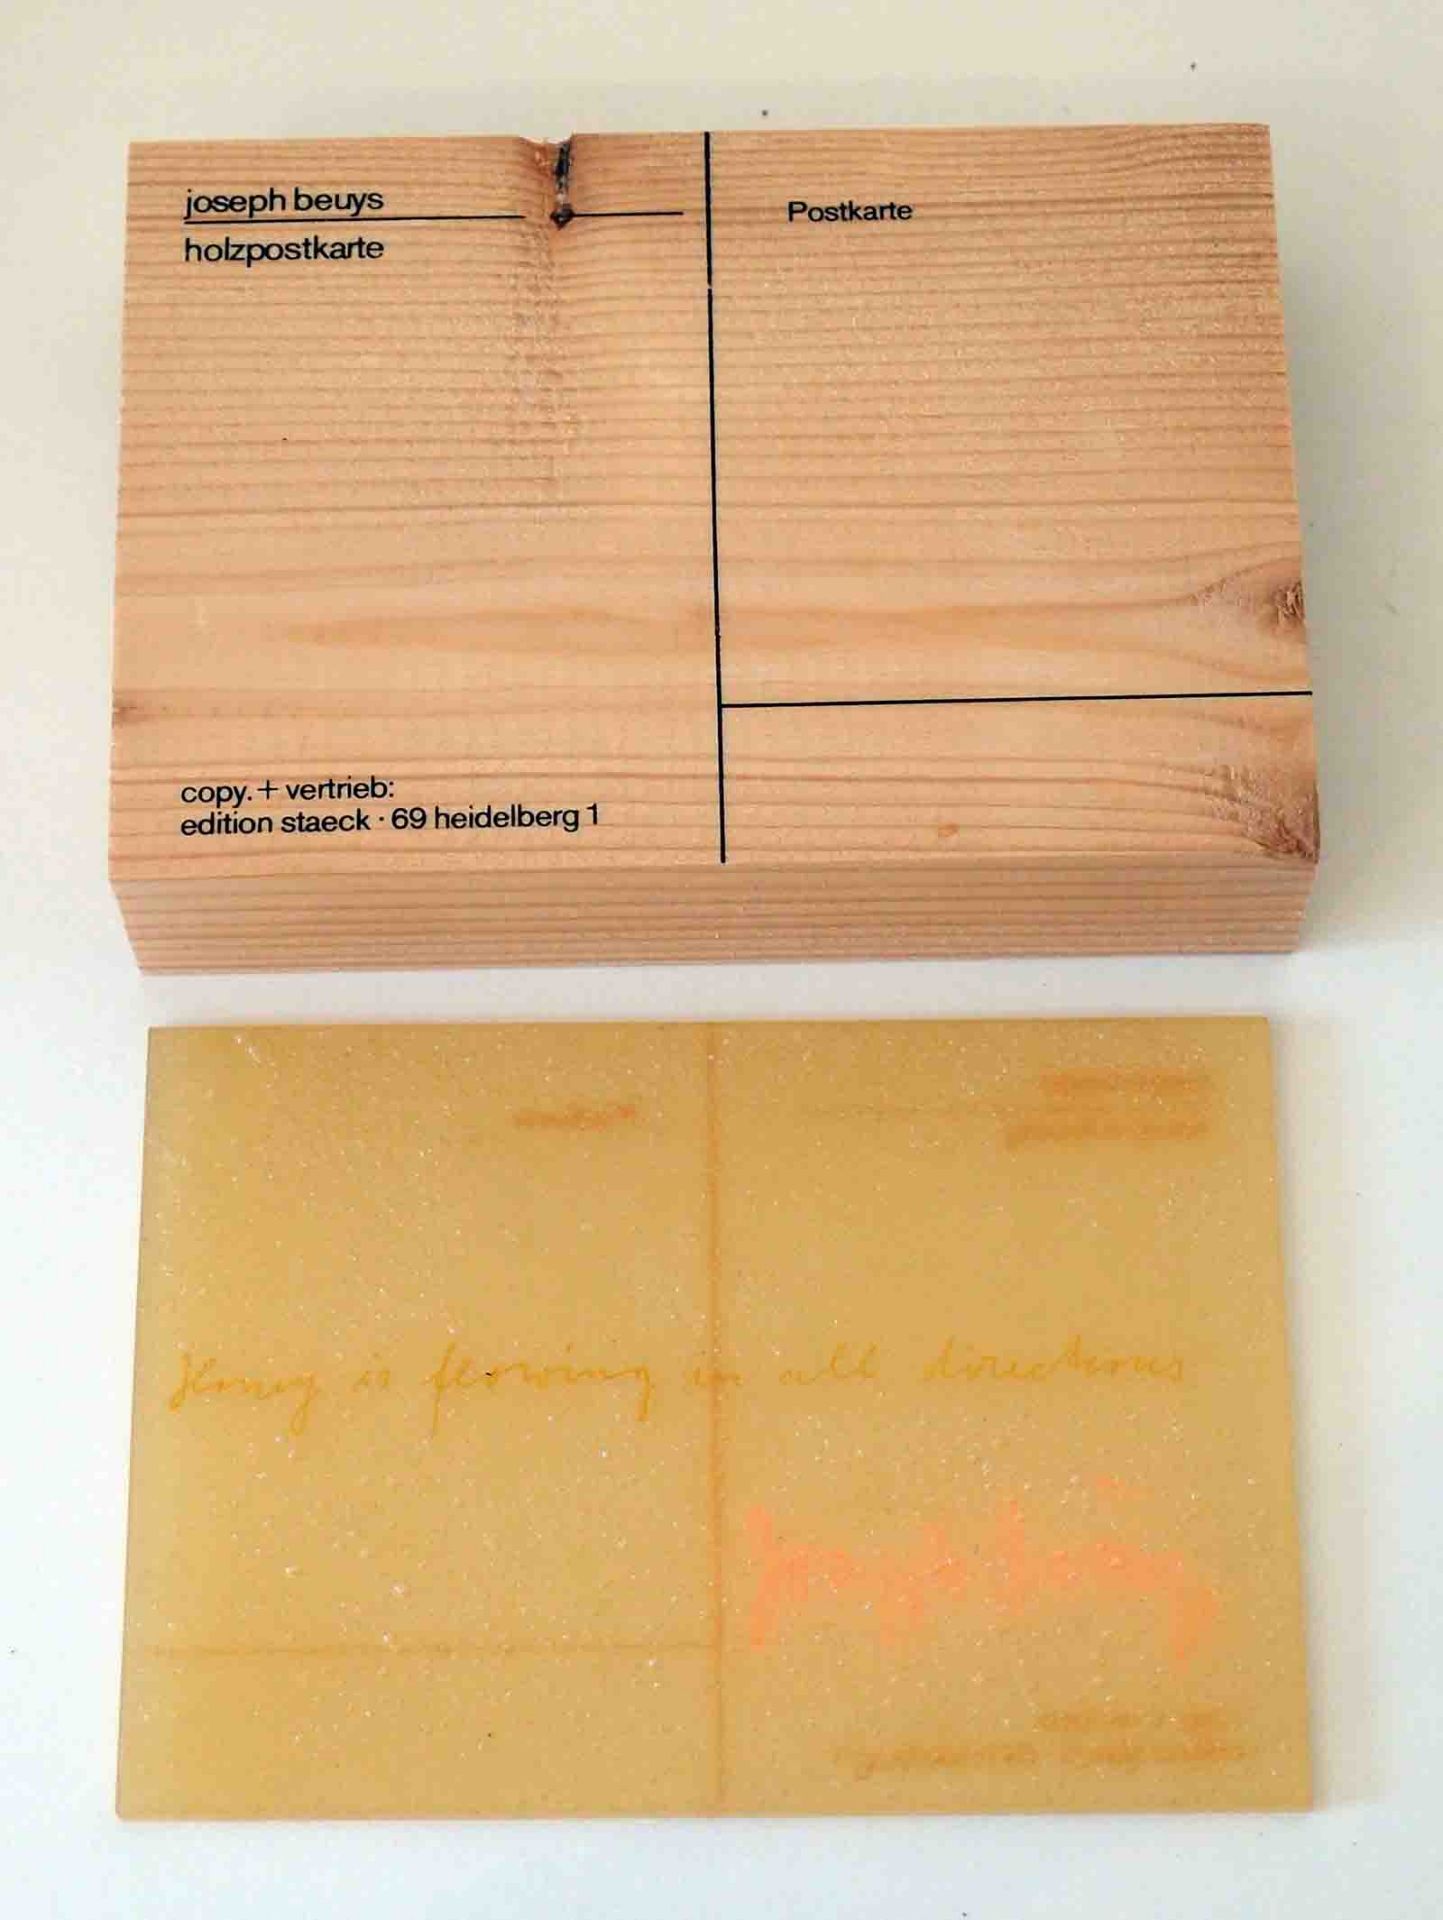 Joseph BeuysKrefeld 1921 - 1986 DüsseldorfHolzpostkarte. Siebdruck auf Fichtenholz. 1974. 10,3 x